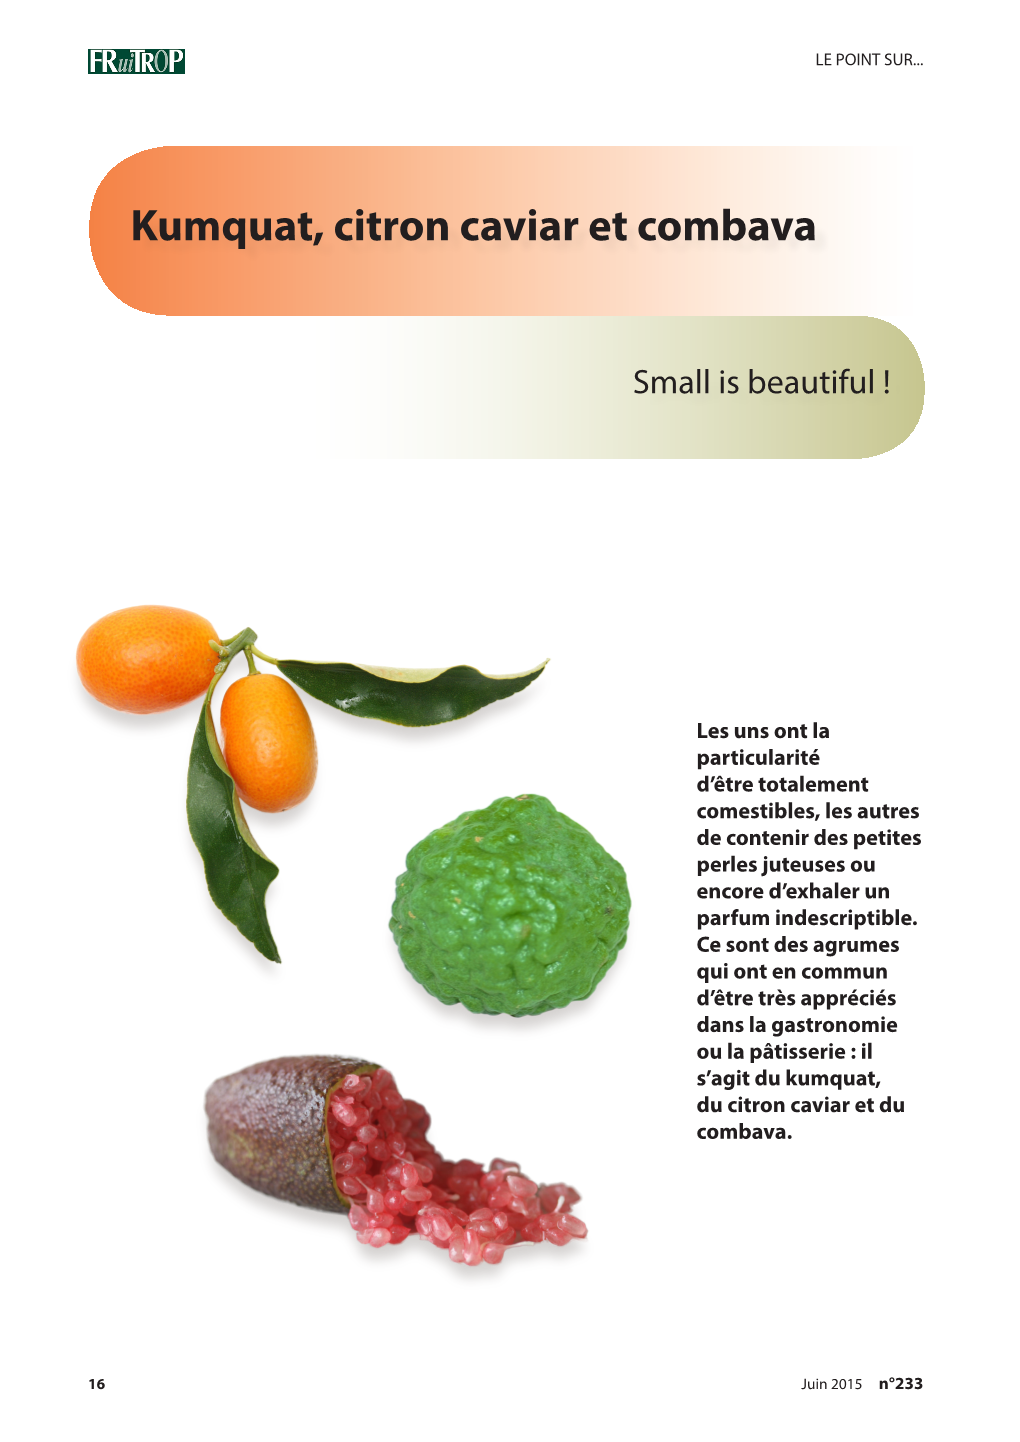 Kumquat, Citron Caviar Et Combava